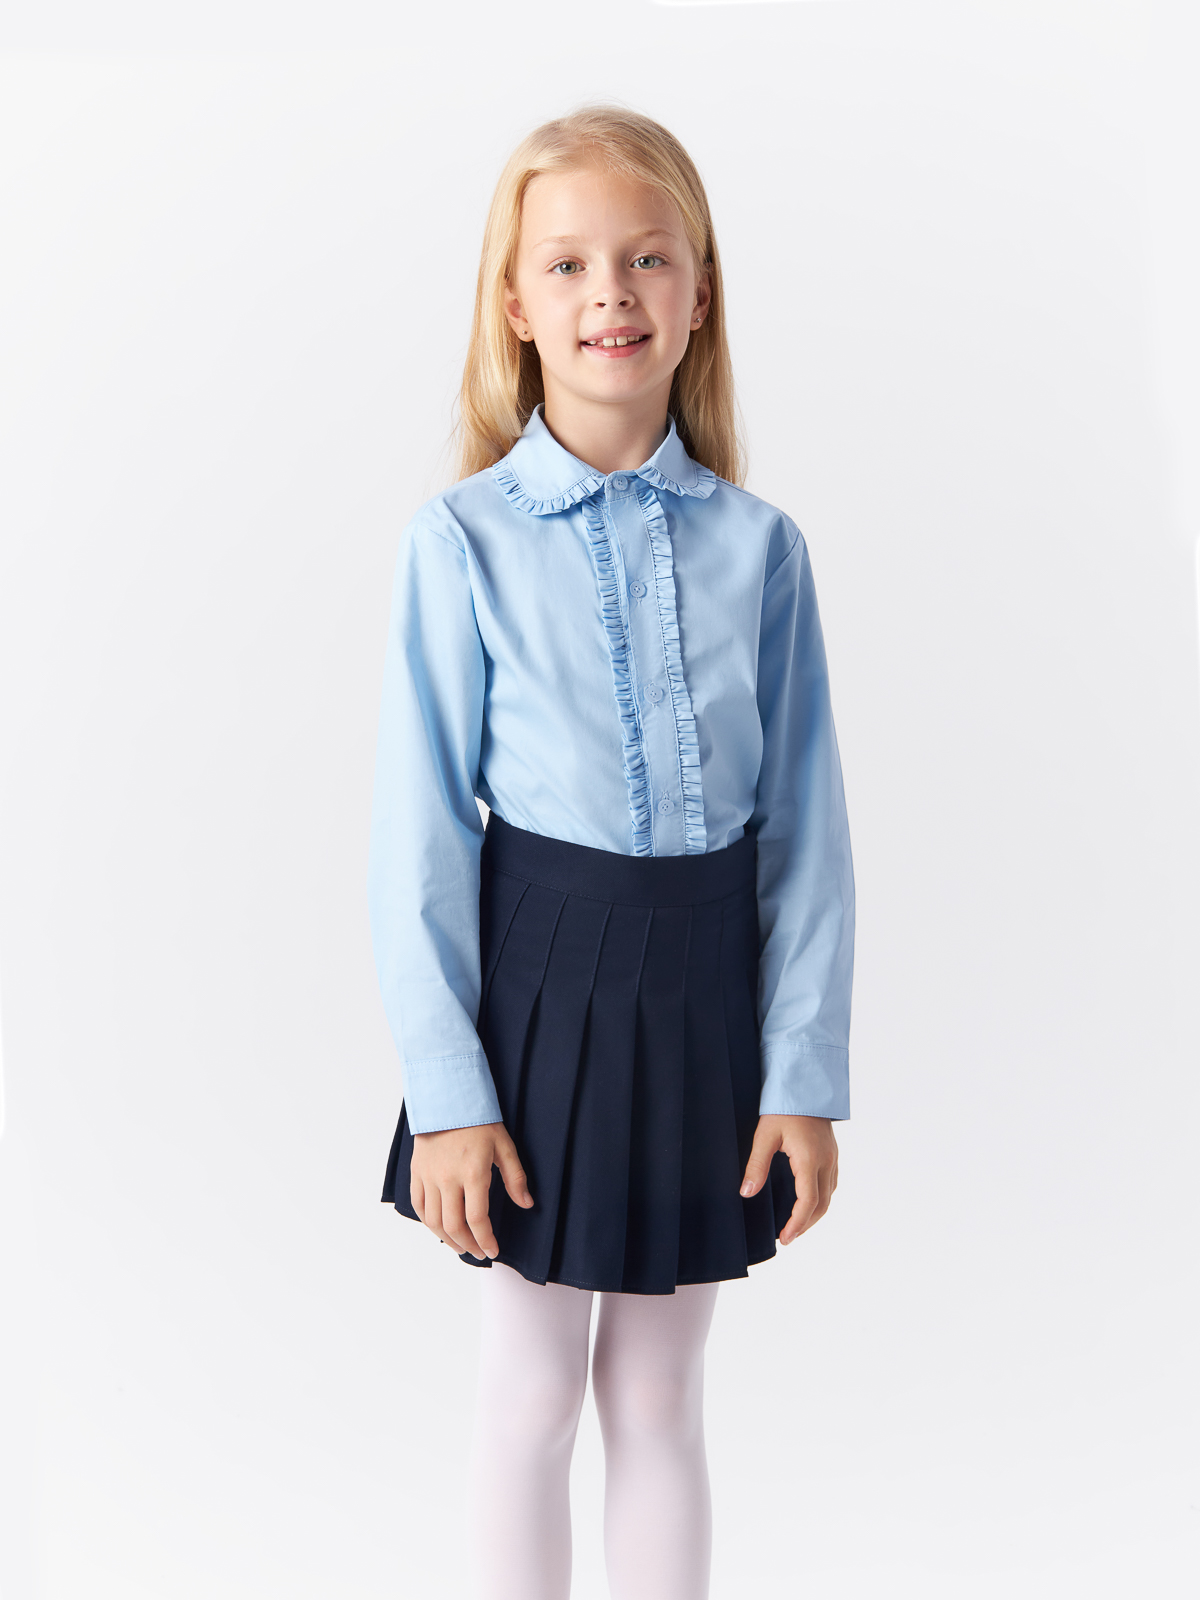 Блузка Yiwu Xflot Supply Chain детская, BS-2blue, размер 160 см блузка трикотажная школьная белая button blue 170